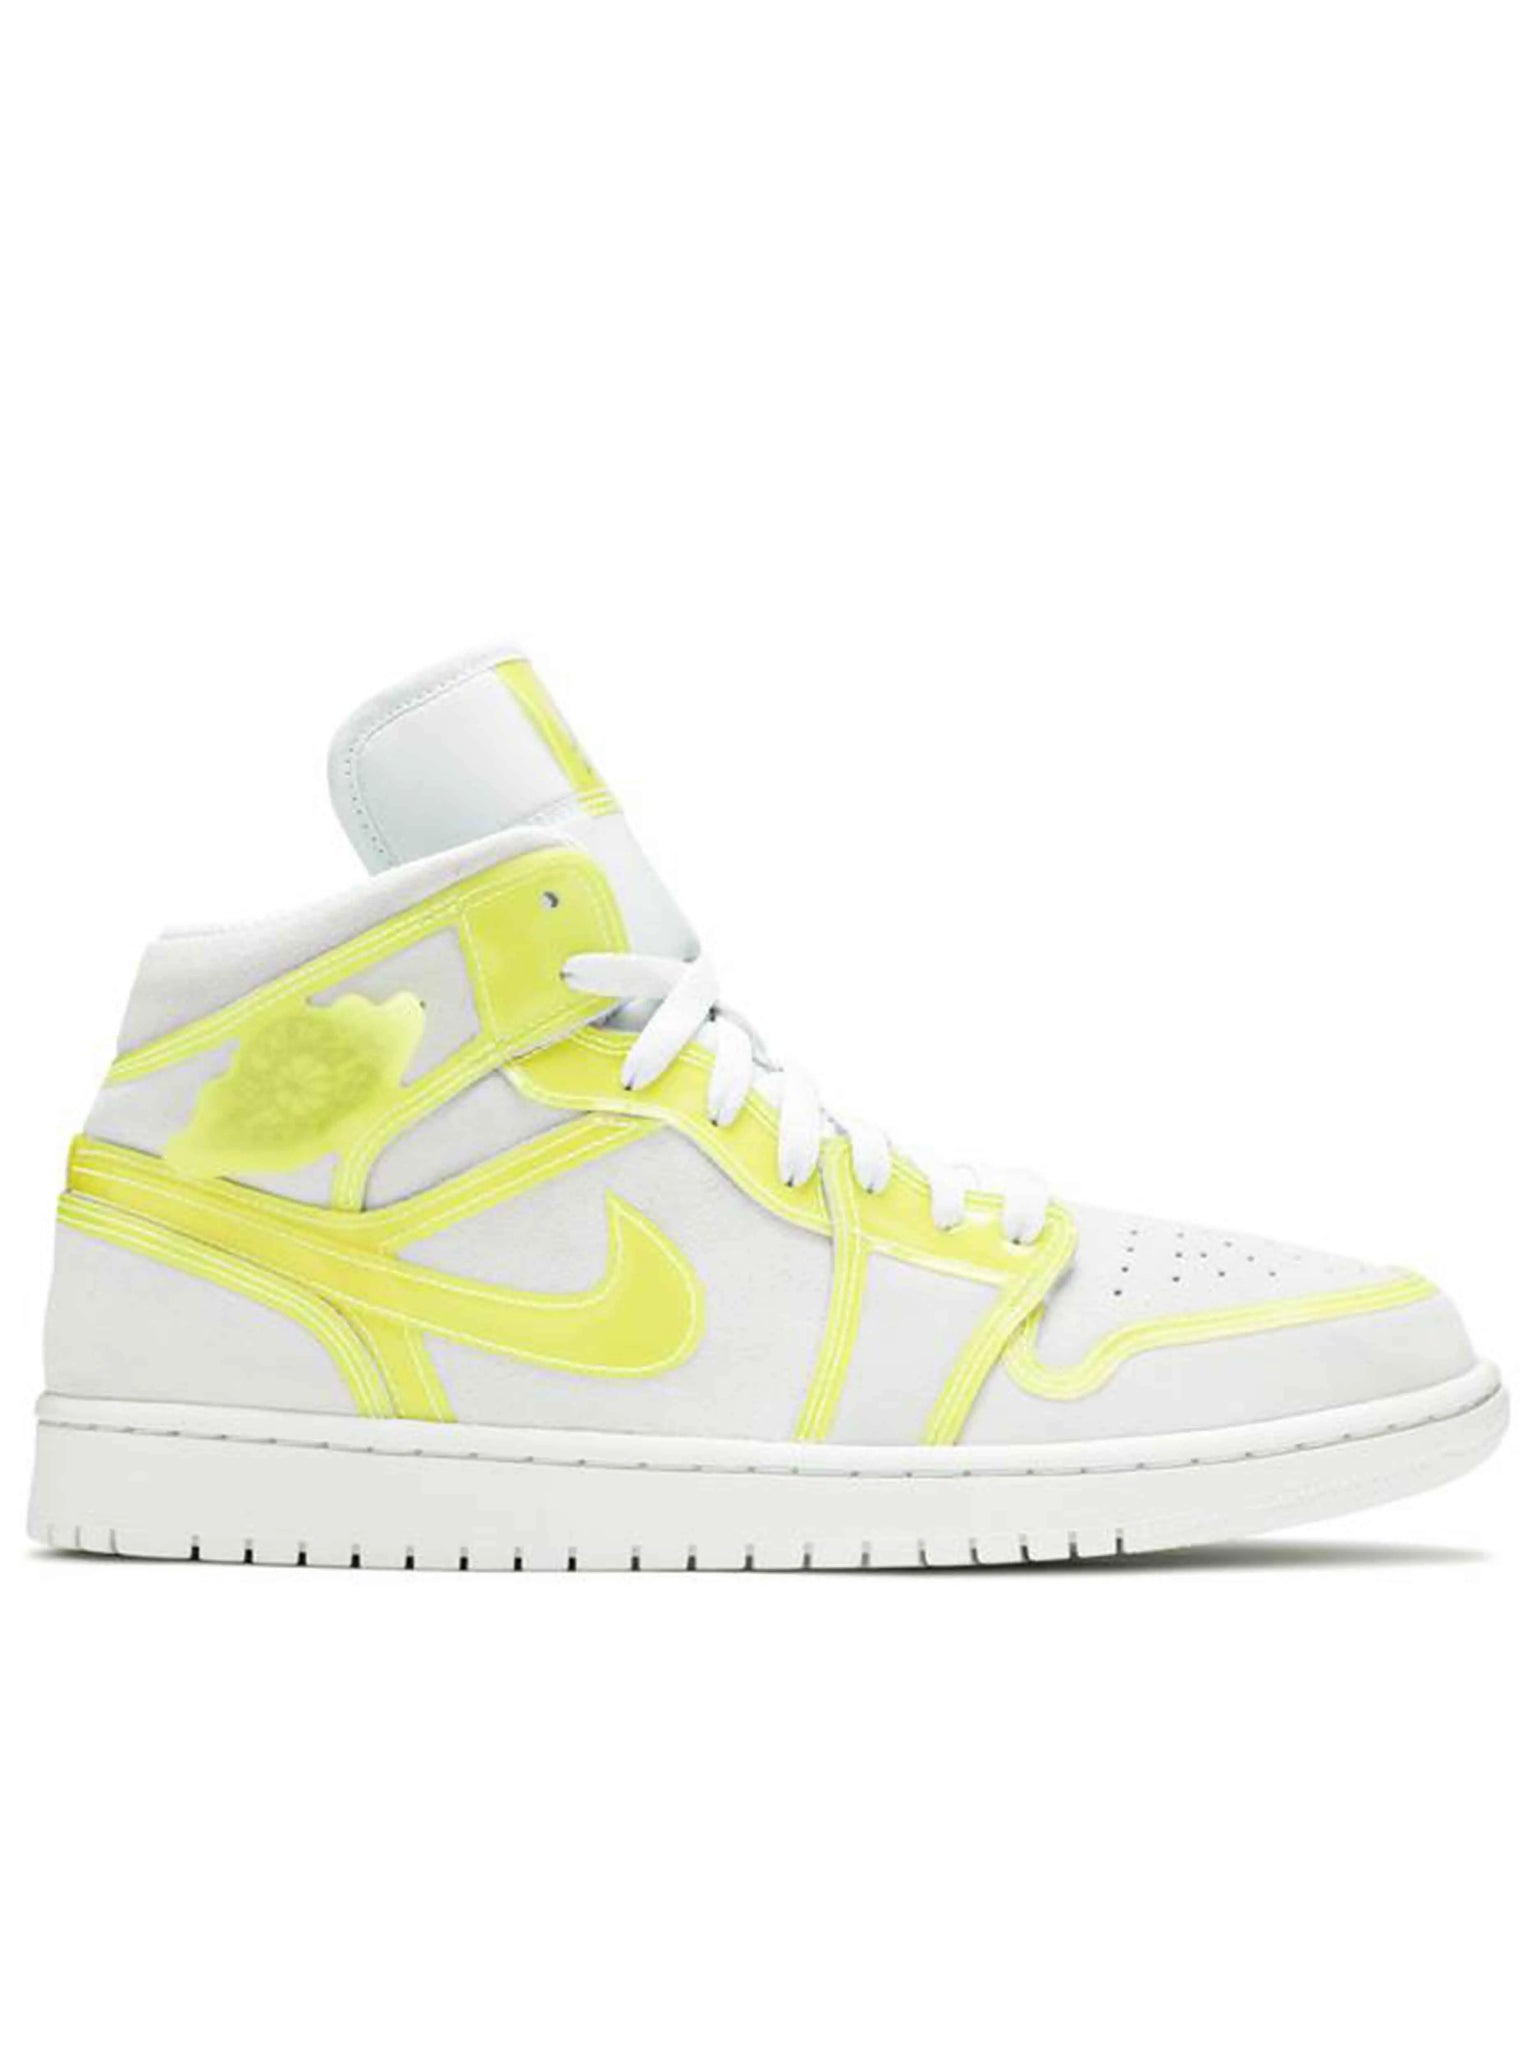 Nike Air Jordan 1 Mid Opti Yellow [W] Prior